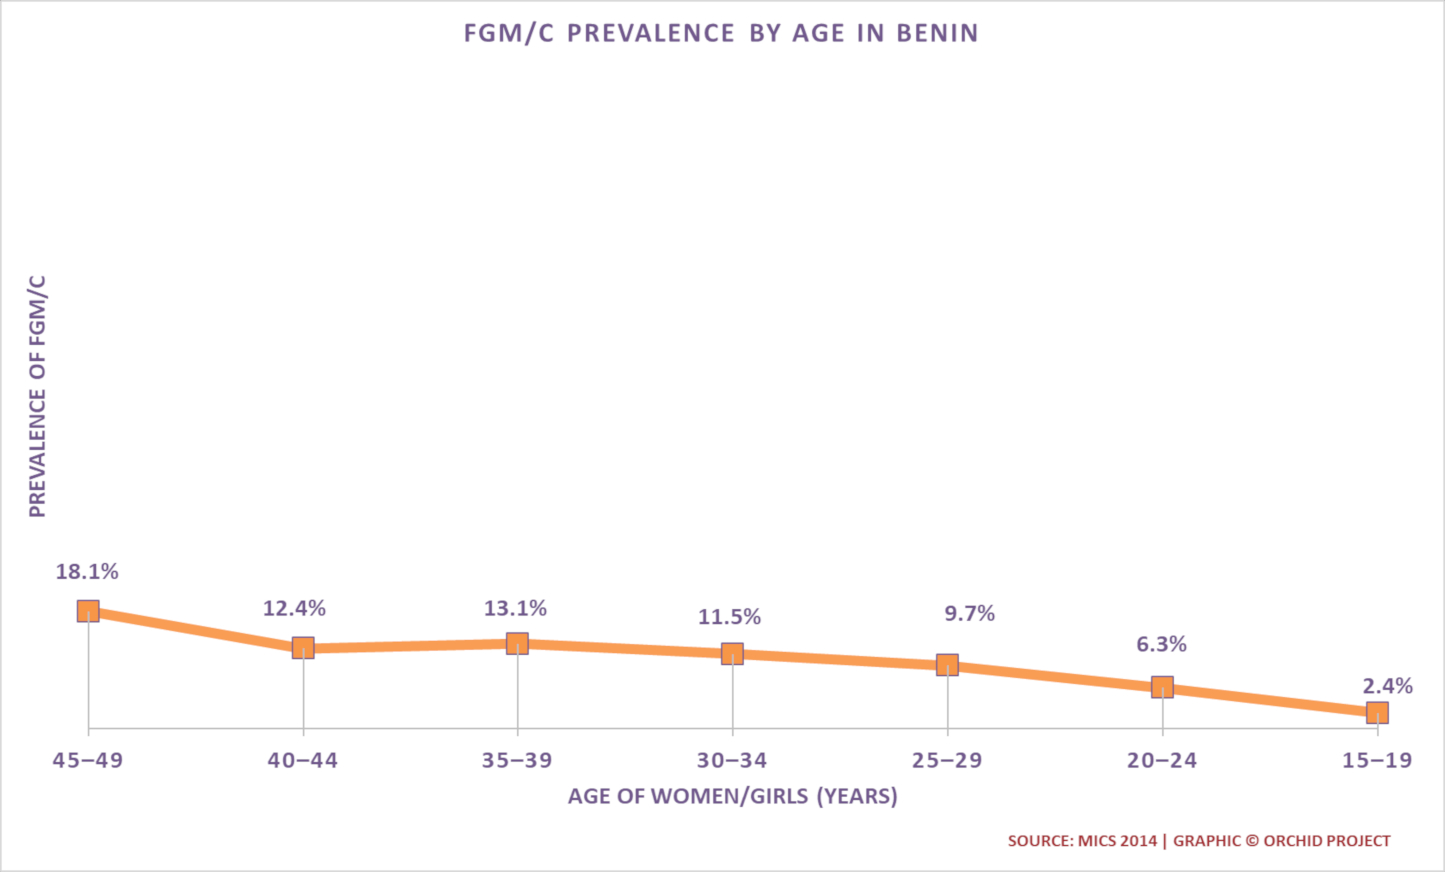 Trends in FGM/C Prevalence in Benin